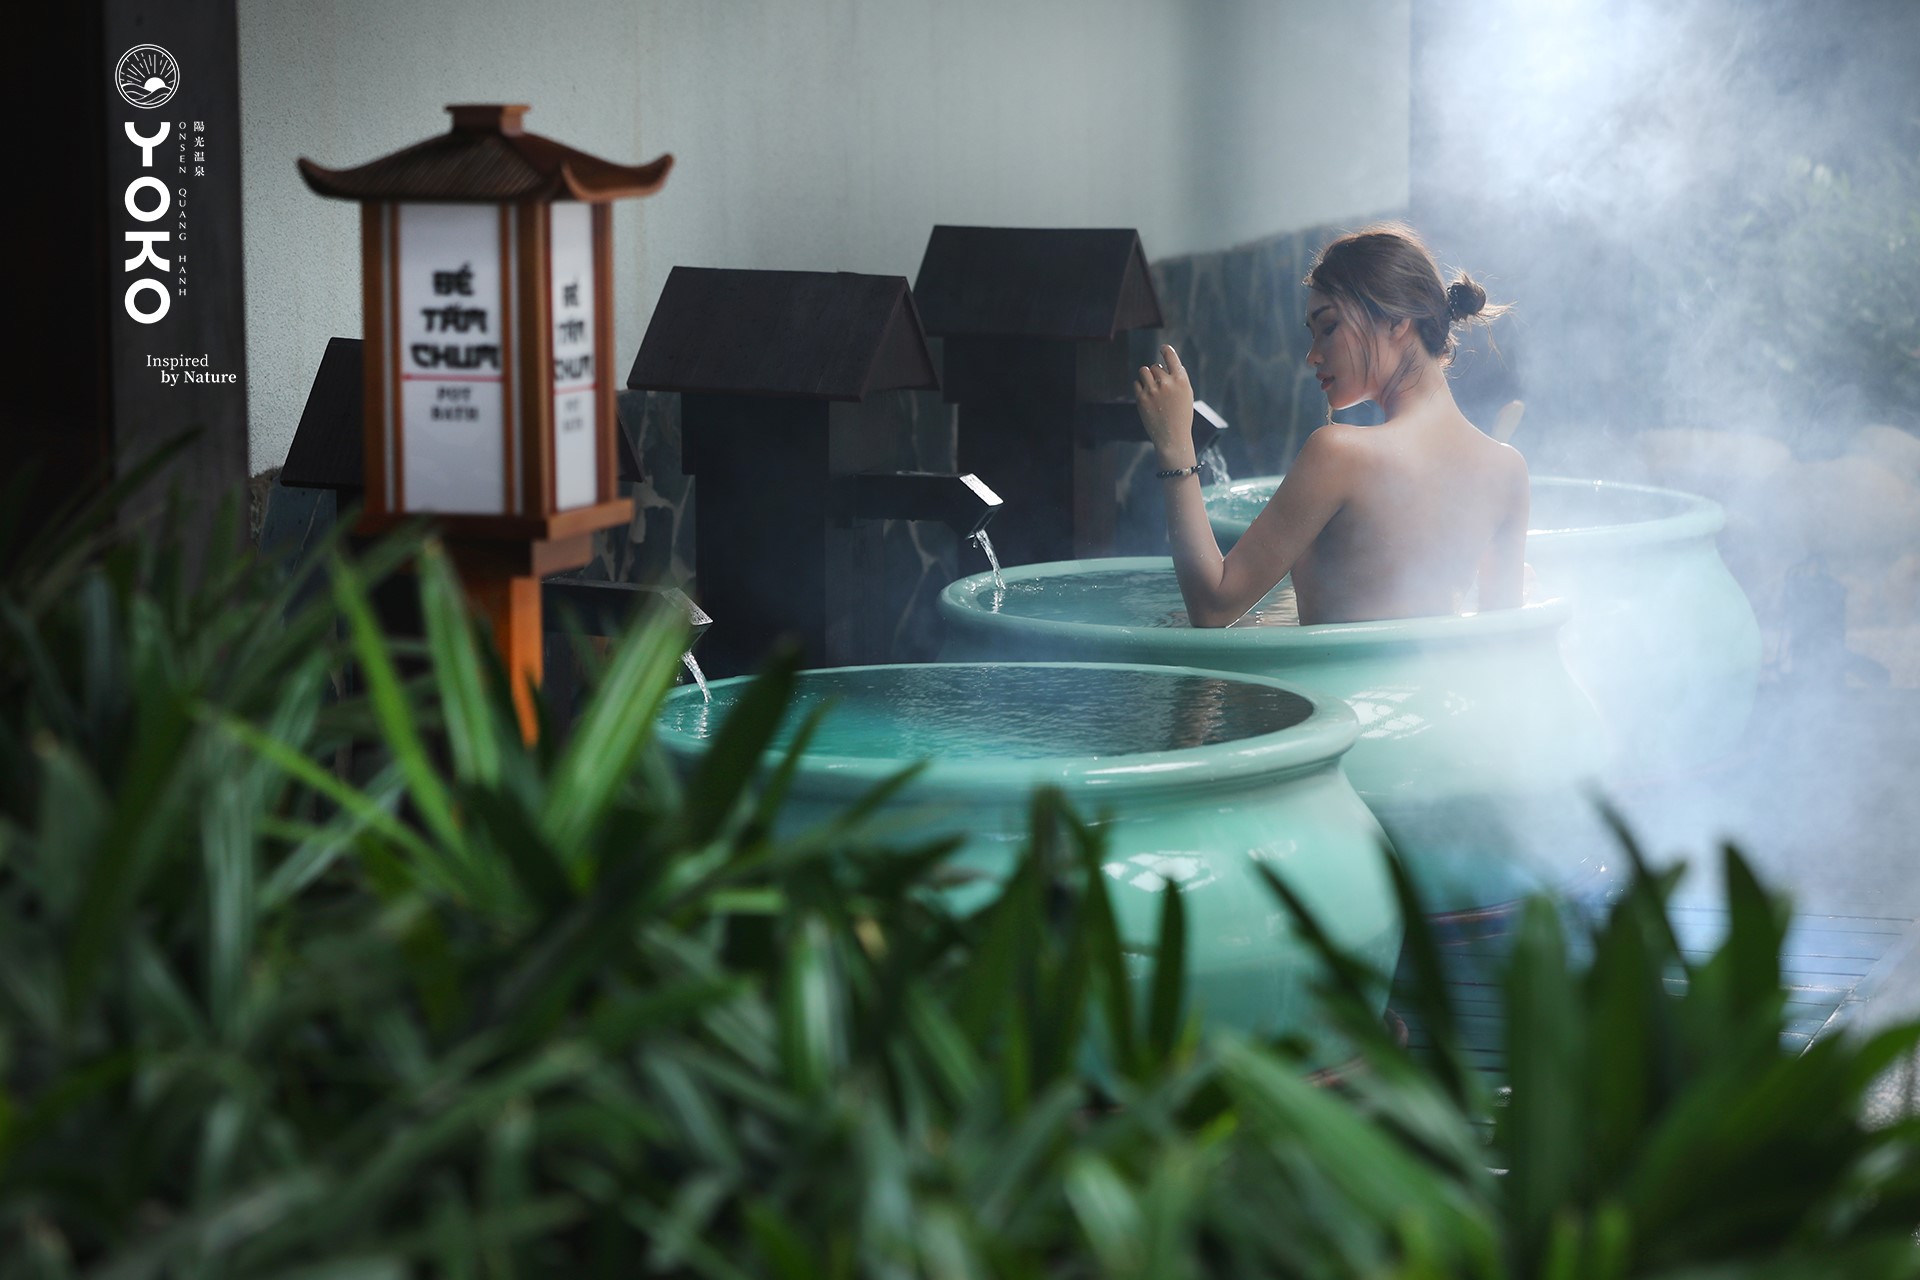 cẩm sử dụng điện thọai khi tắm onsen quang hanh